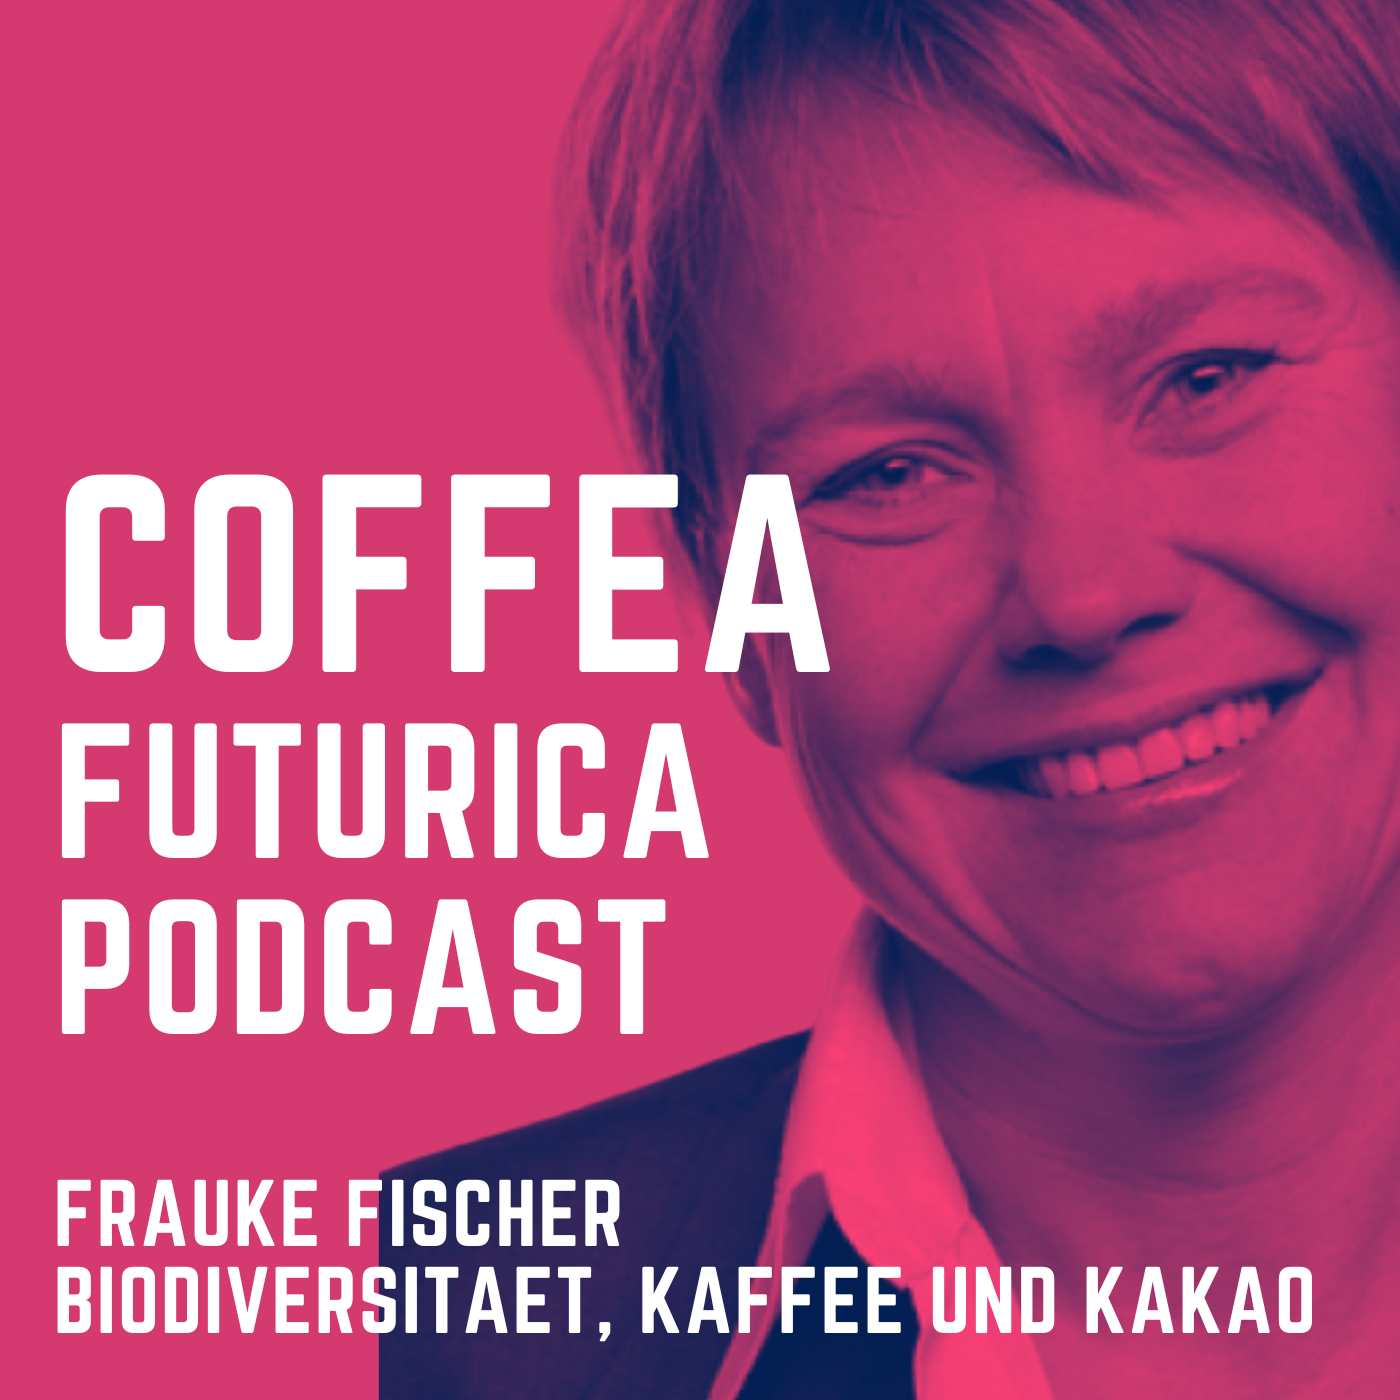 Biodiversität & Kaffee - Frauke Fischer im Gespräch